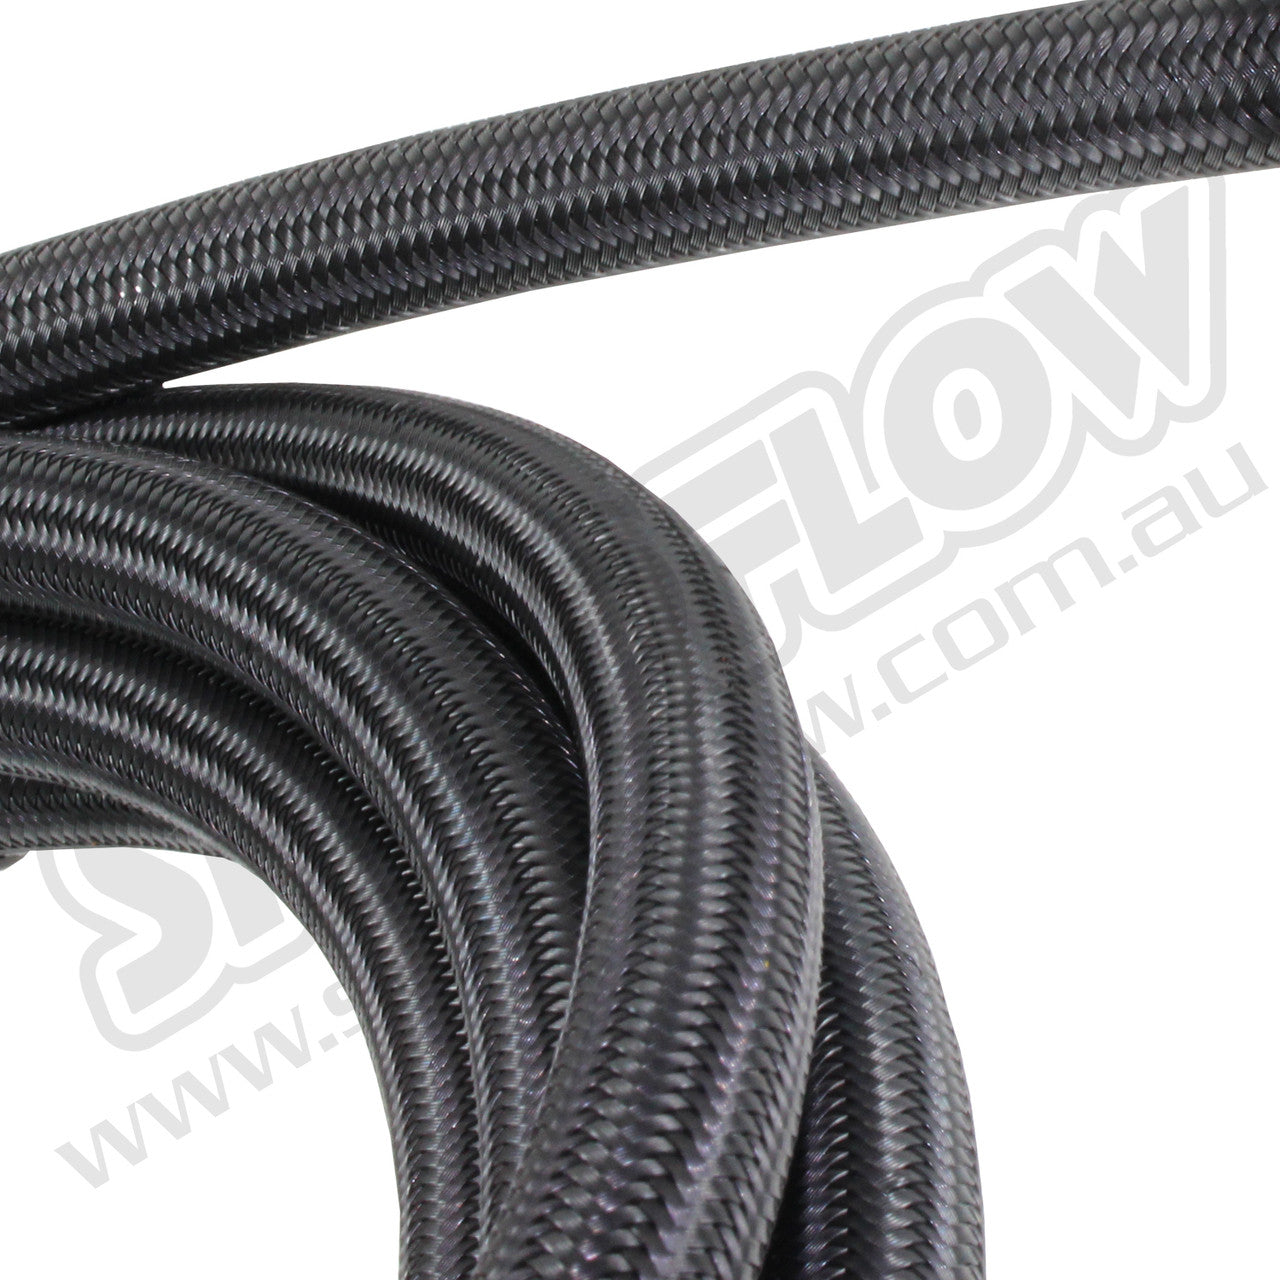 Speedflow 3M -12AN 200 Series Braided Hose - Black Stainless Steel